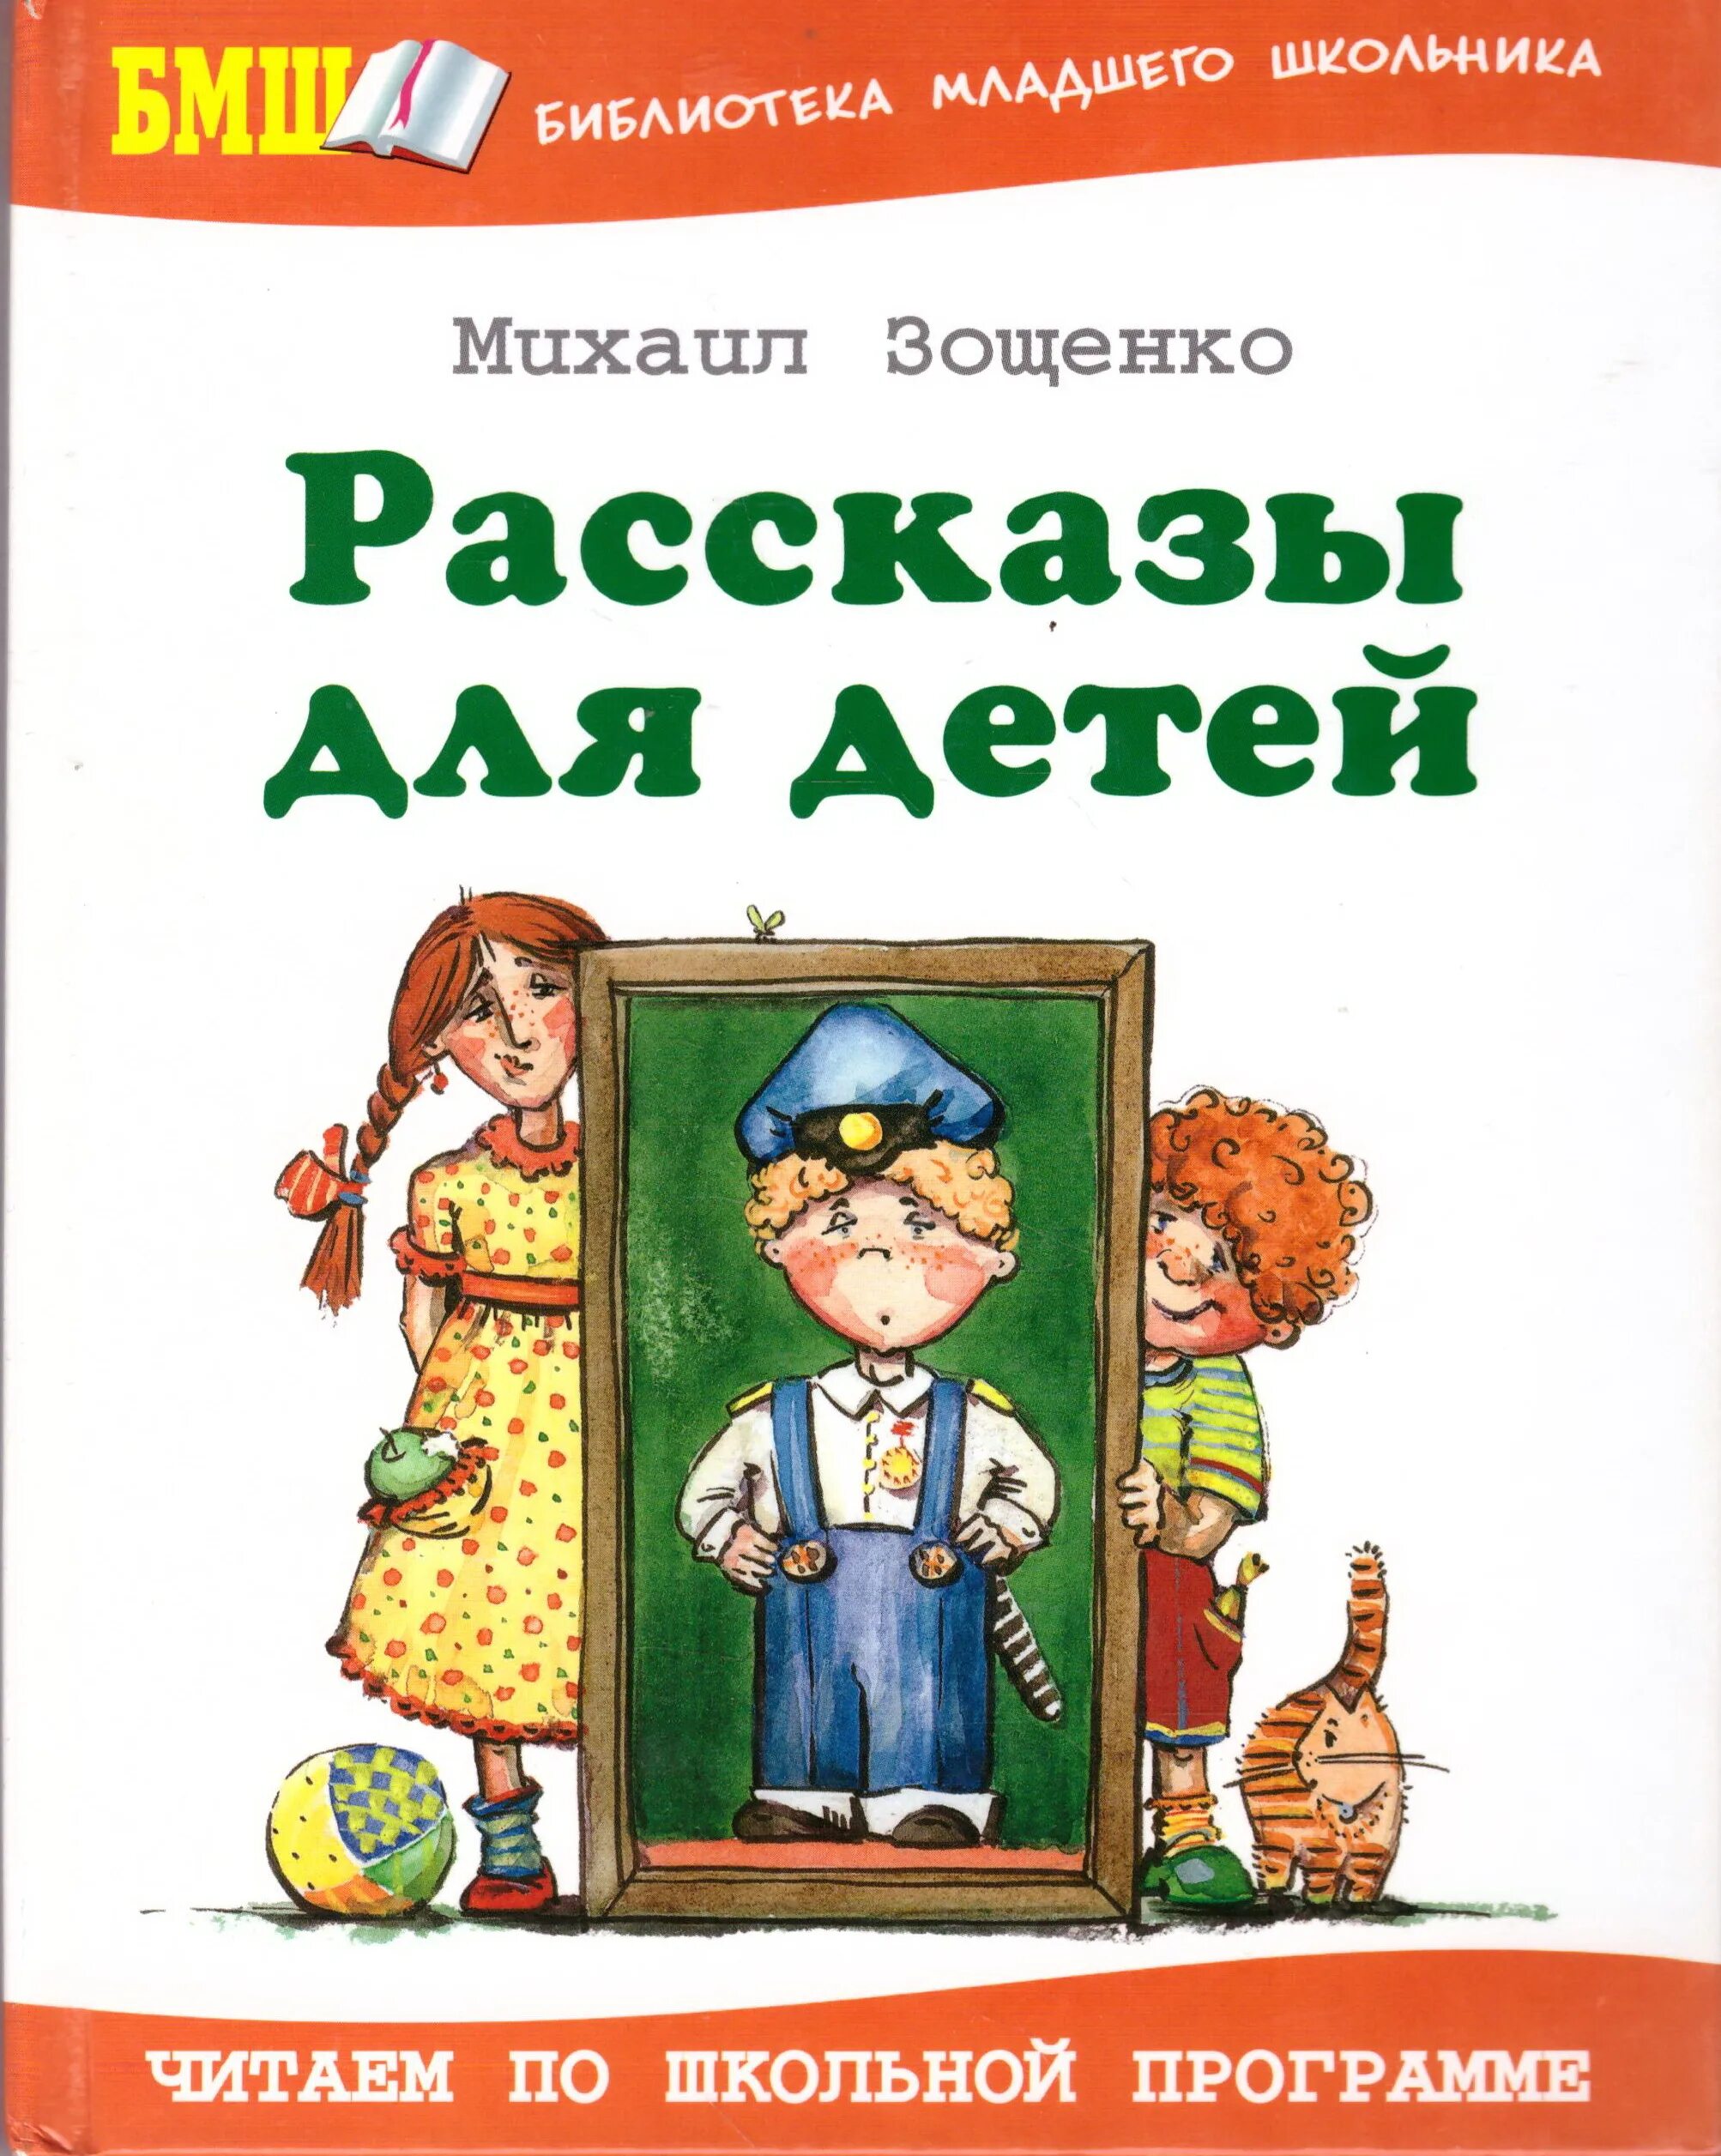 Произведения зощенко учат. Книга Зощенко рассказы для детей.